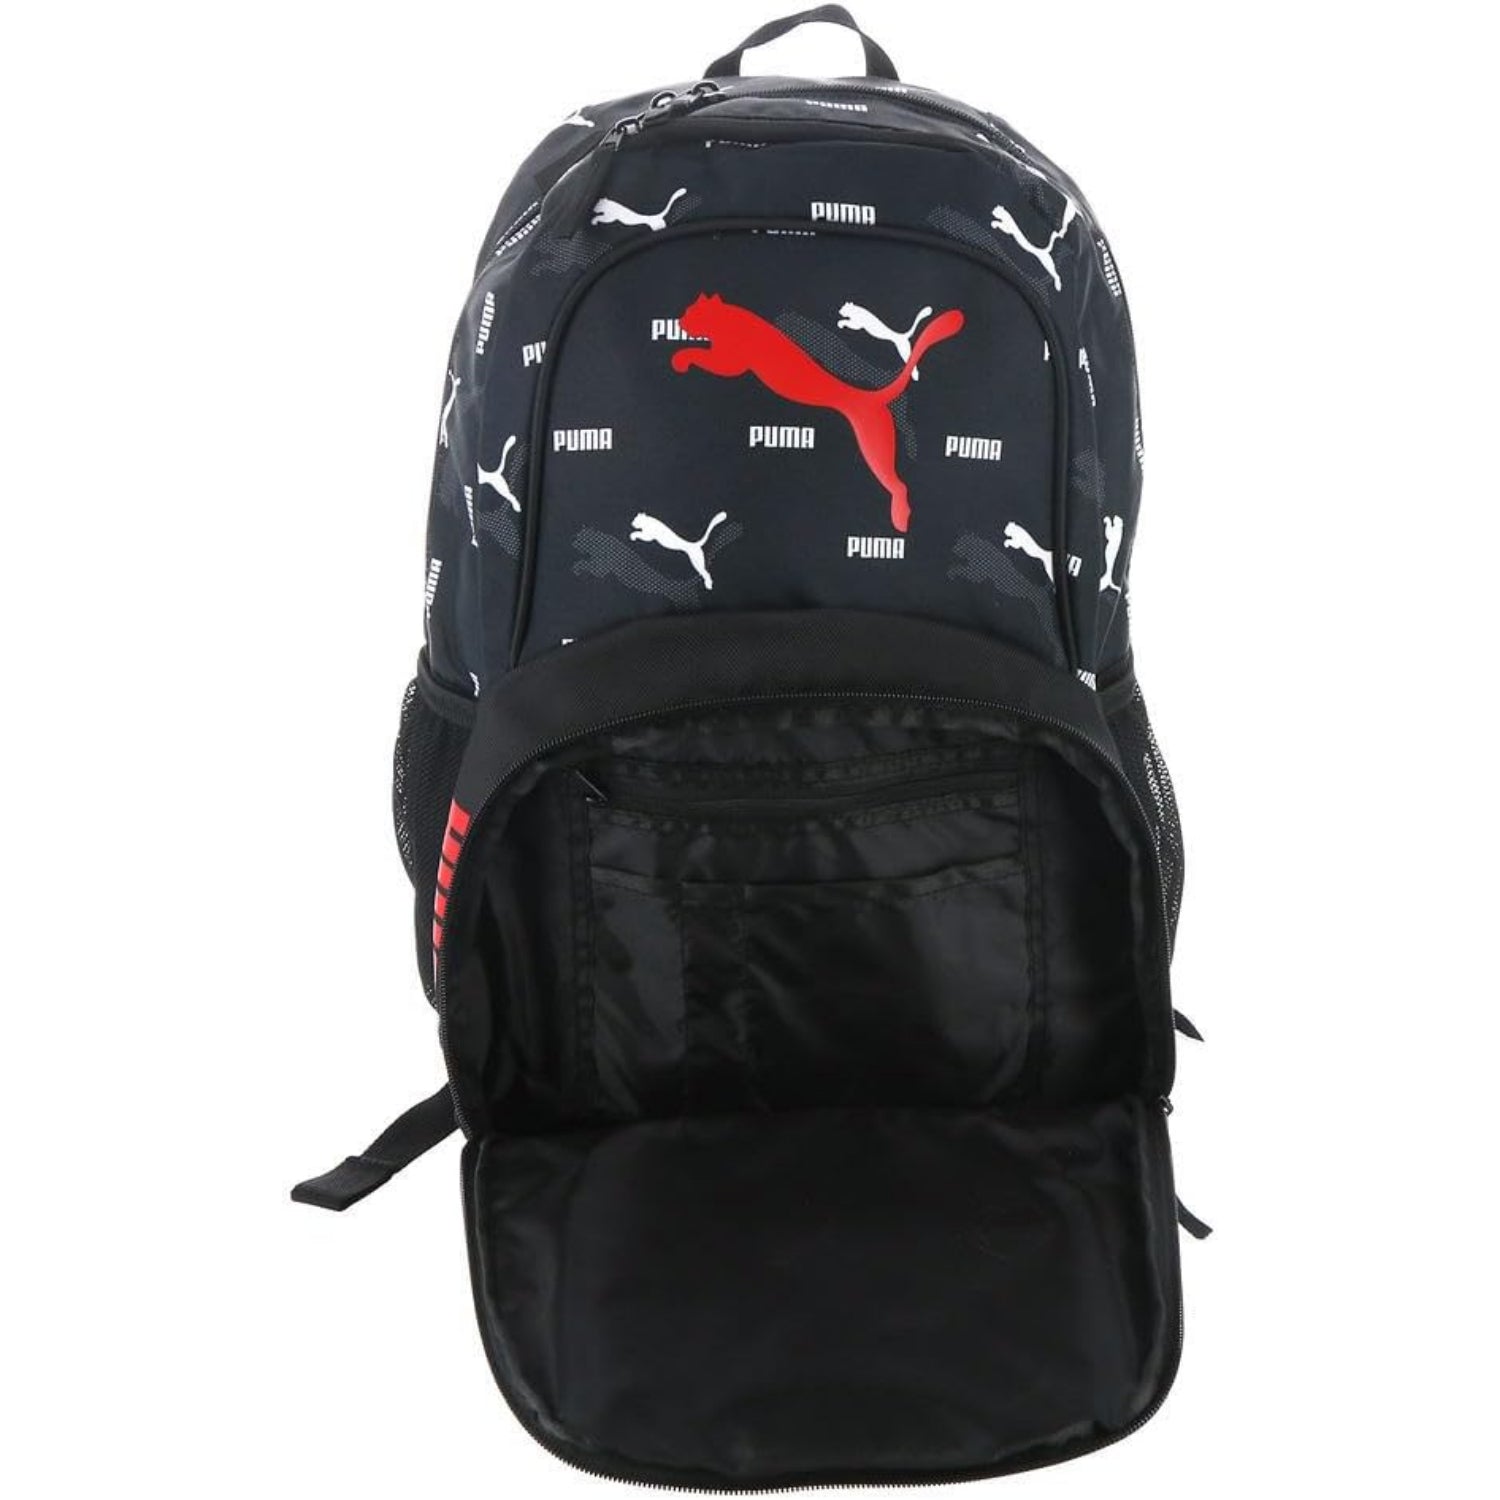 Core PU Backpack